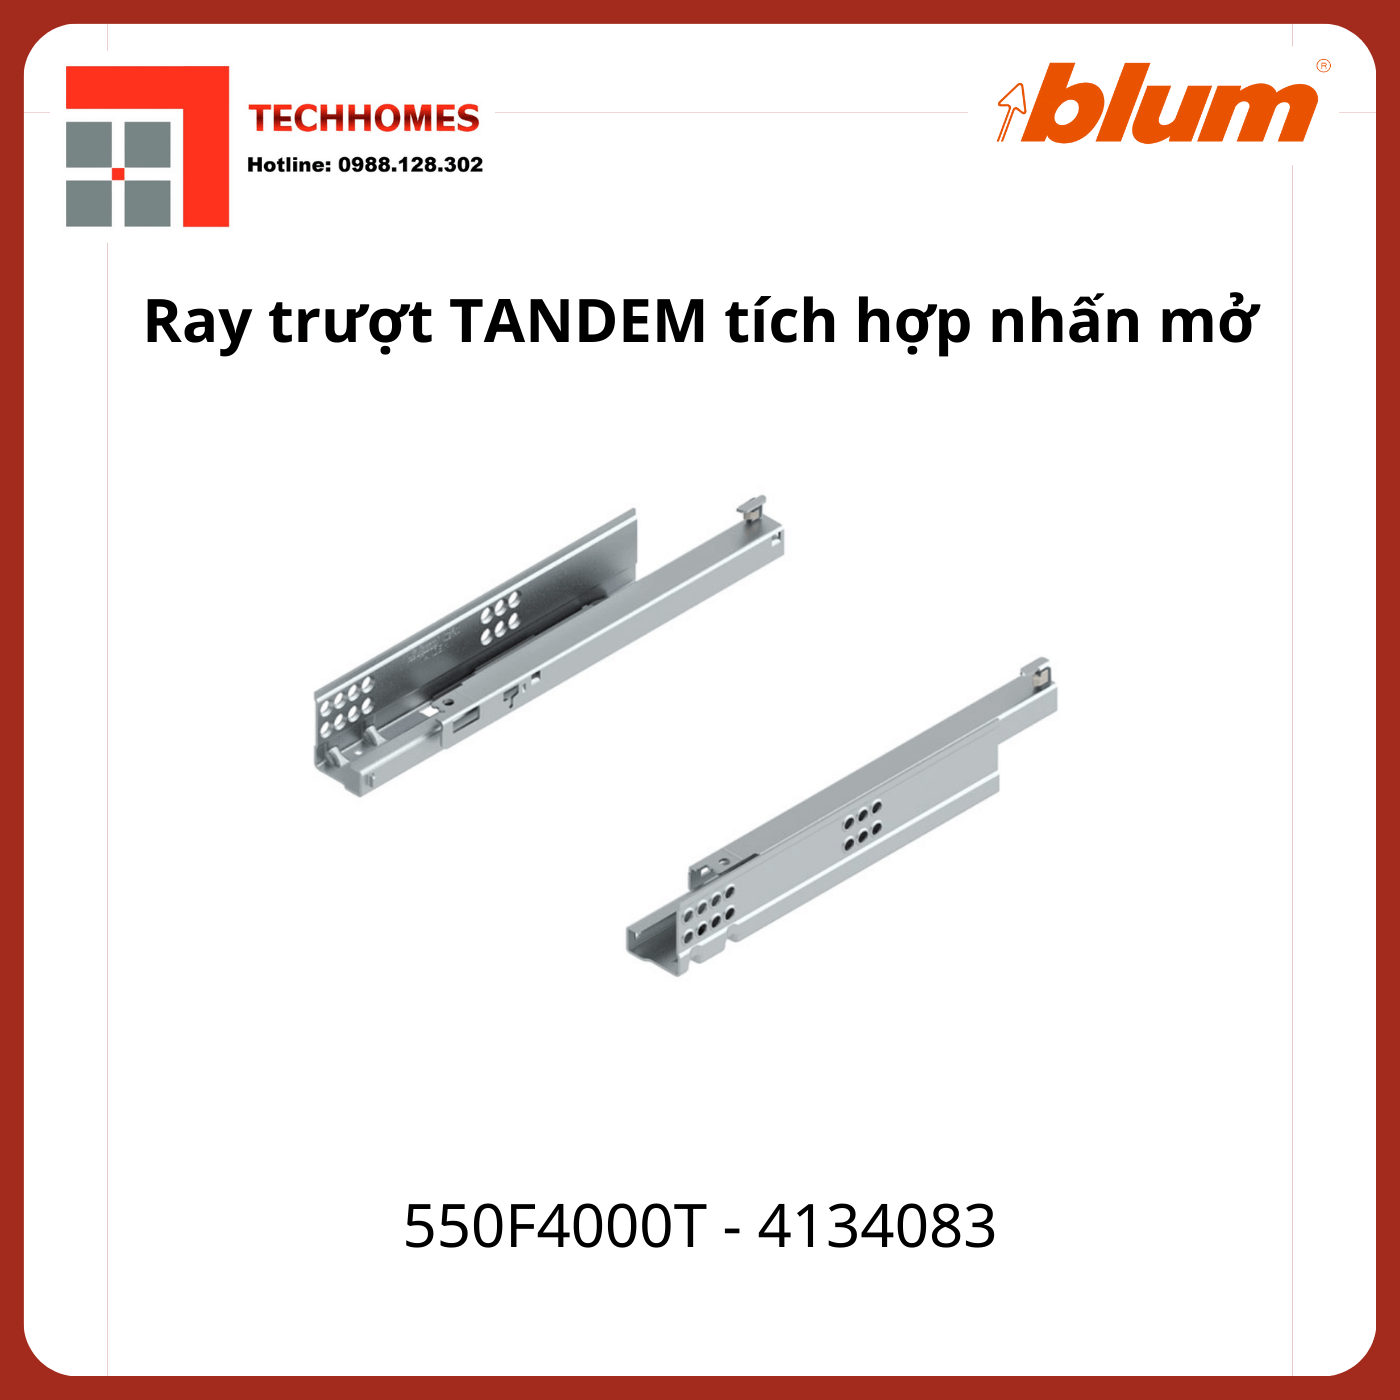 Ray trượt Blum TANDEM tích hợp nhấn mở 550F4000T 4134083 mở 3/4, 30kg